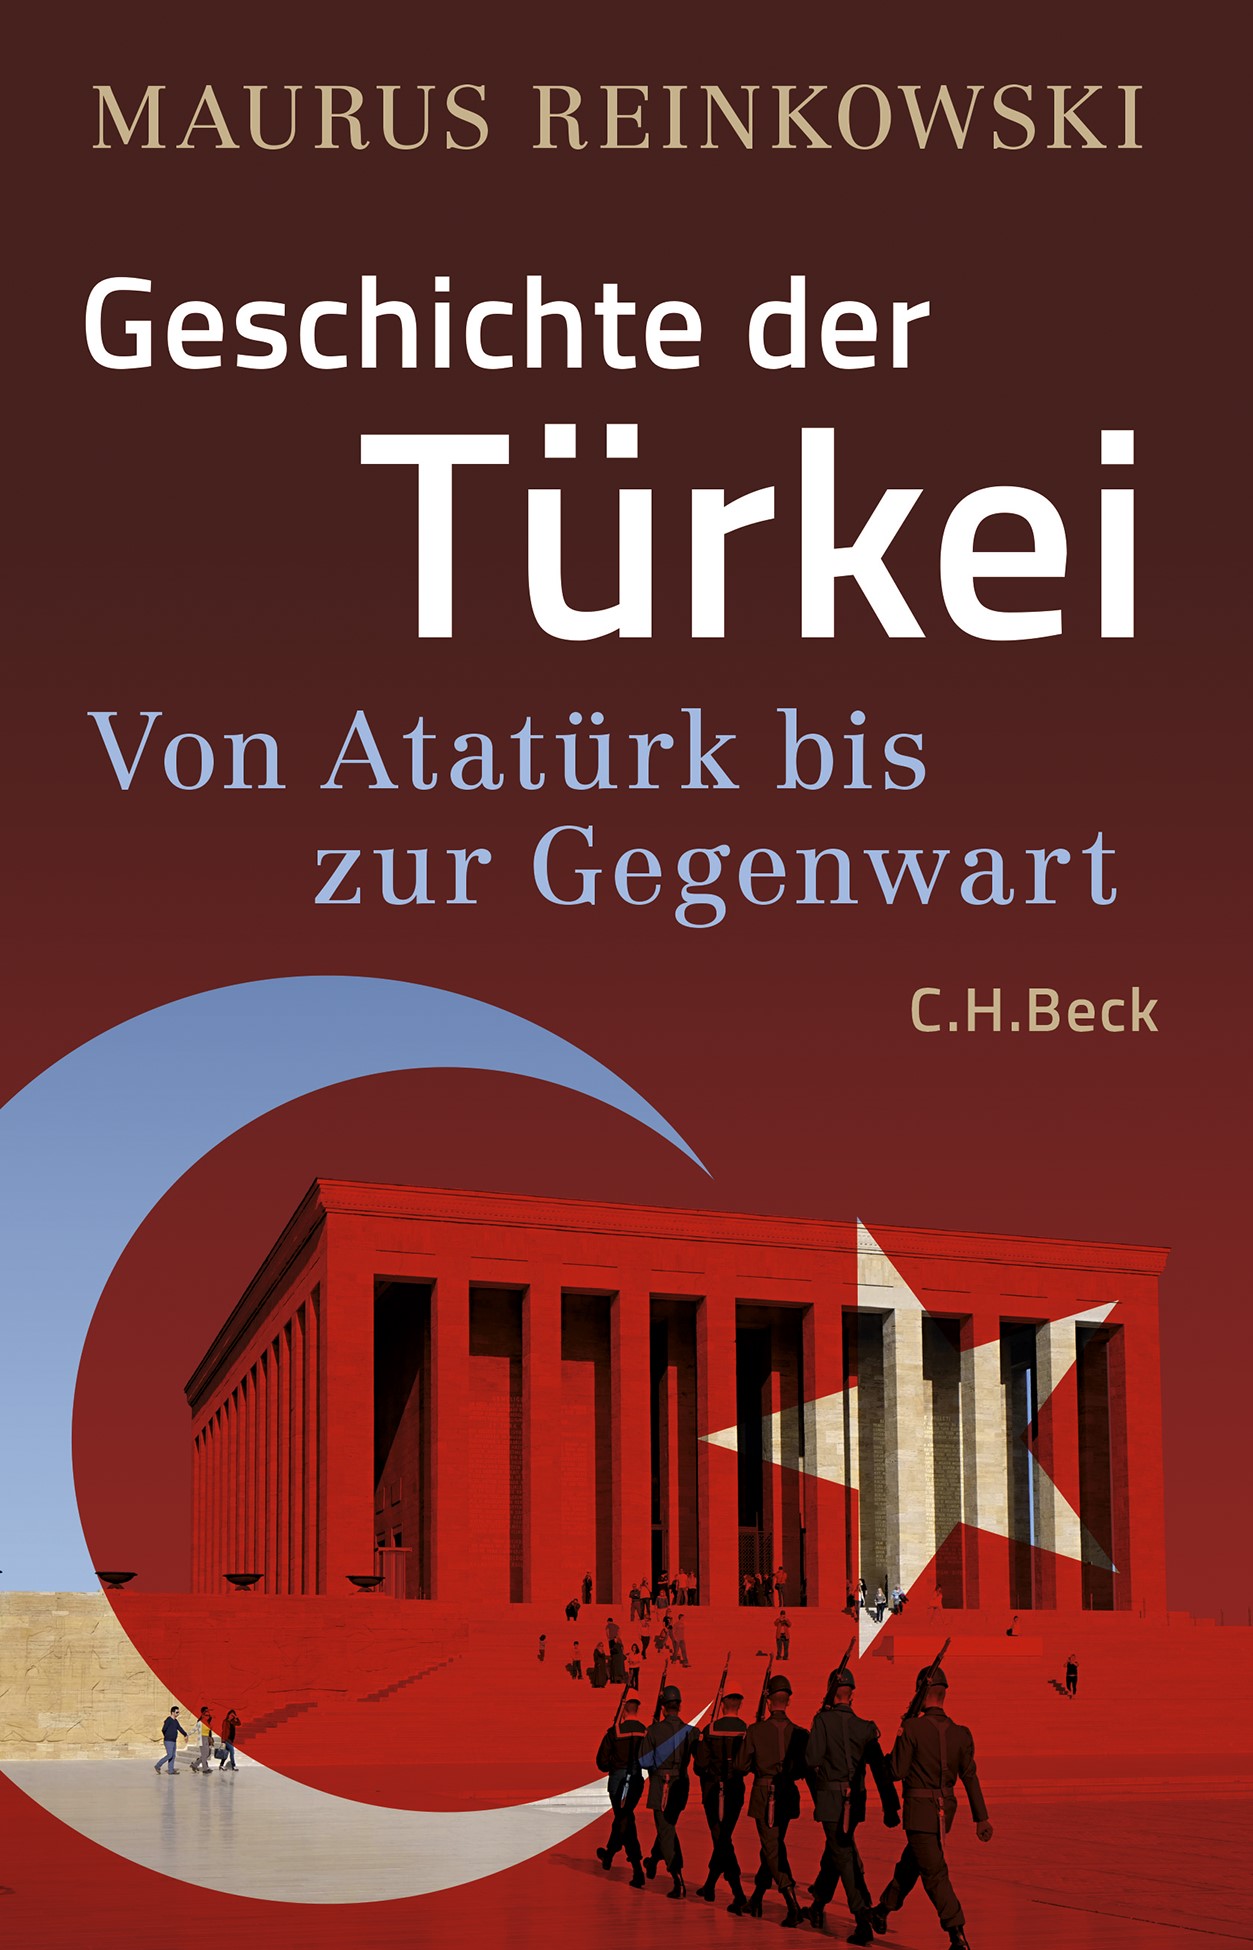 Cover of Maurus Reinkowski's "Geschichte der Türkei" (published in German by C. H. Beck)